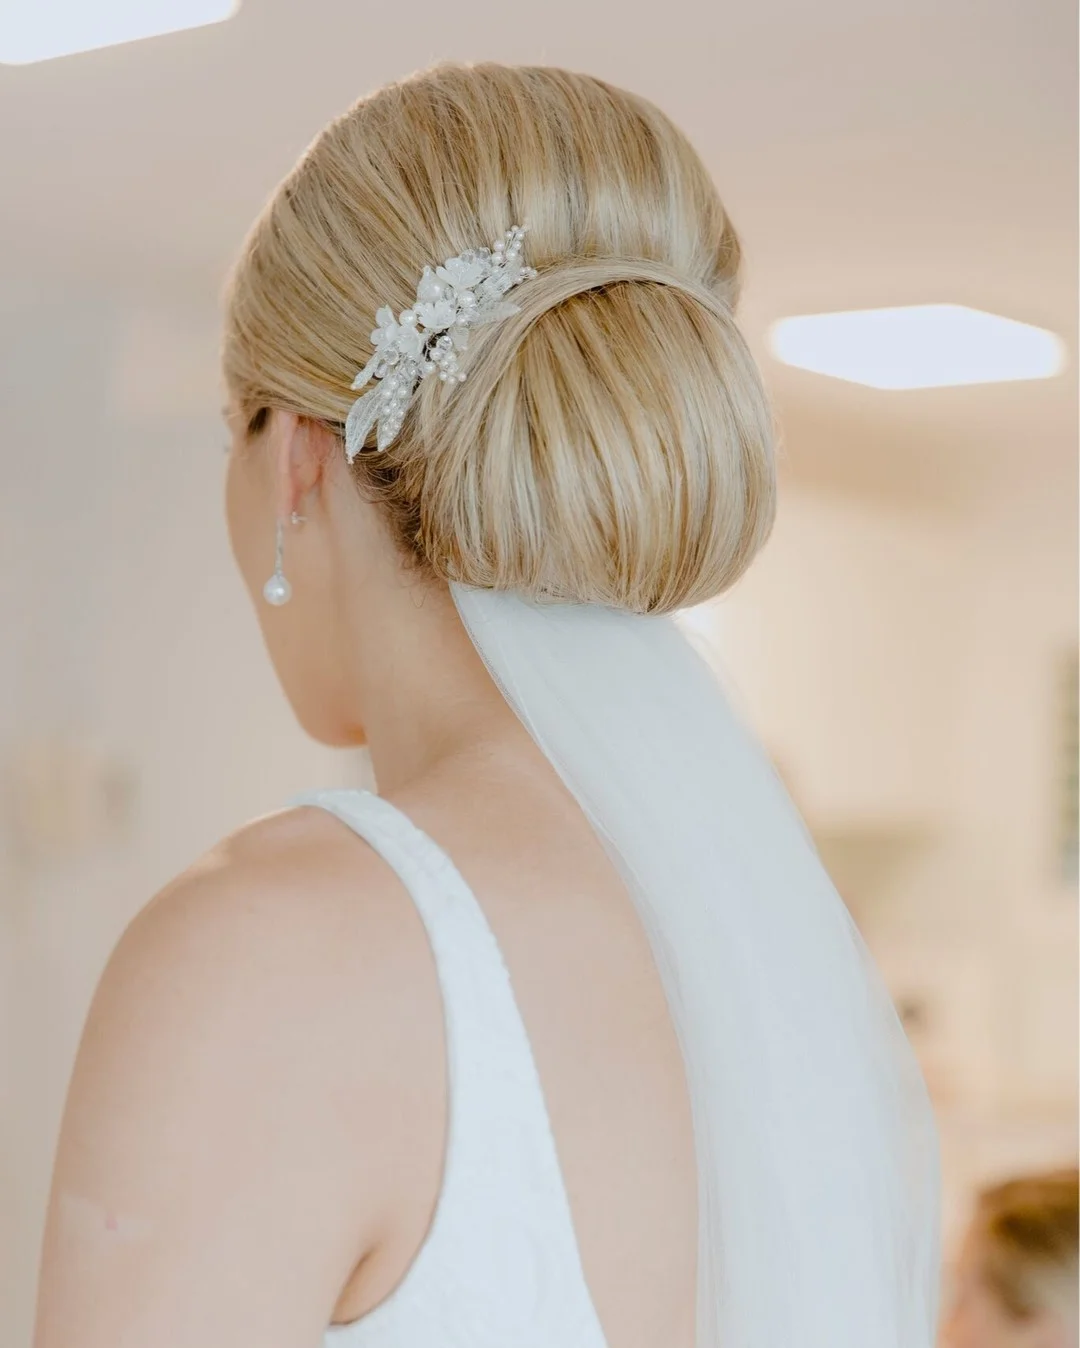 Best-wedding-updo-hairstyles-low-bun-Evalyn-Parsons